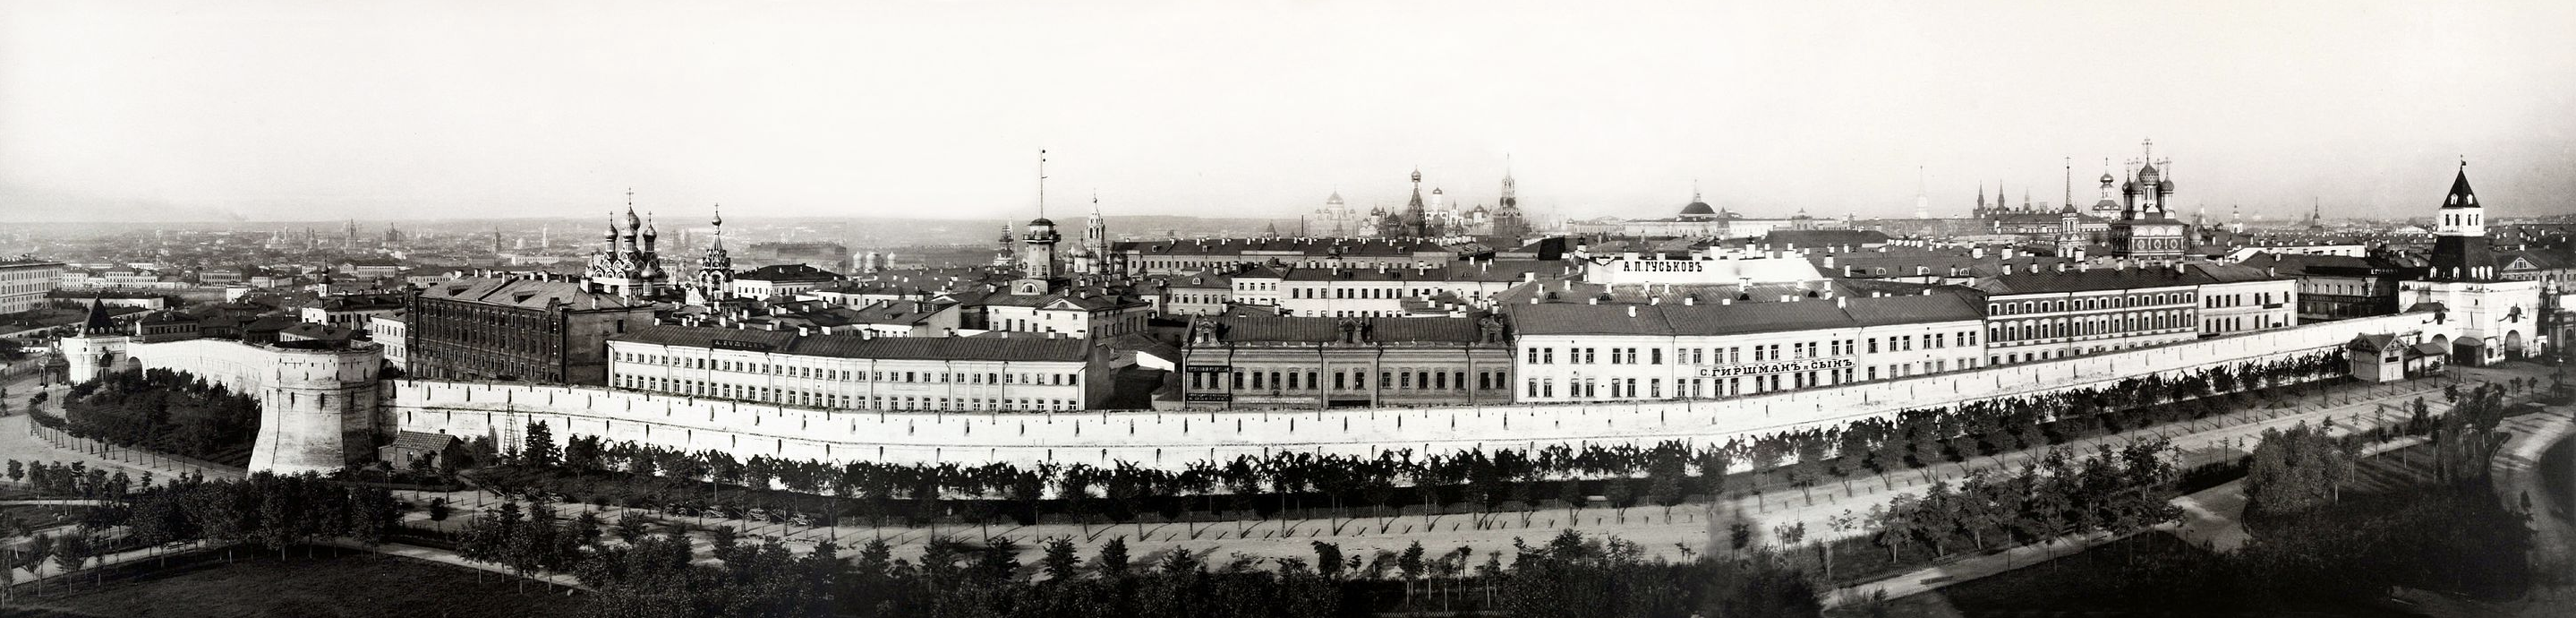 При каком правителе был построен китай город. Панорама Китай-города, 1887 год. Китайгородская стена в Москве. Китай Кородская стена Кремля. 1535–1538 Годы Китайгородская стена в Москве.